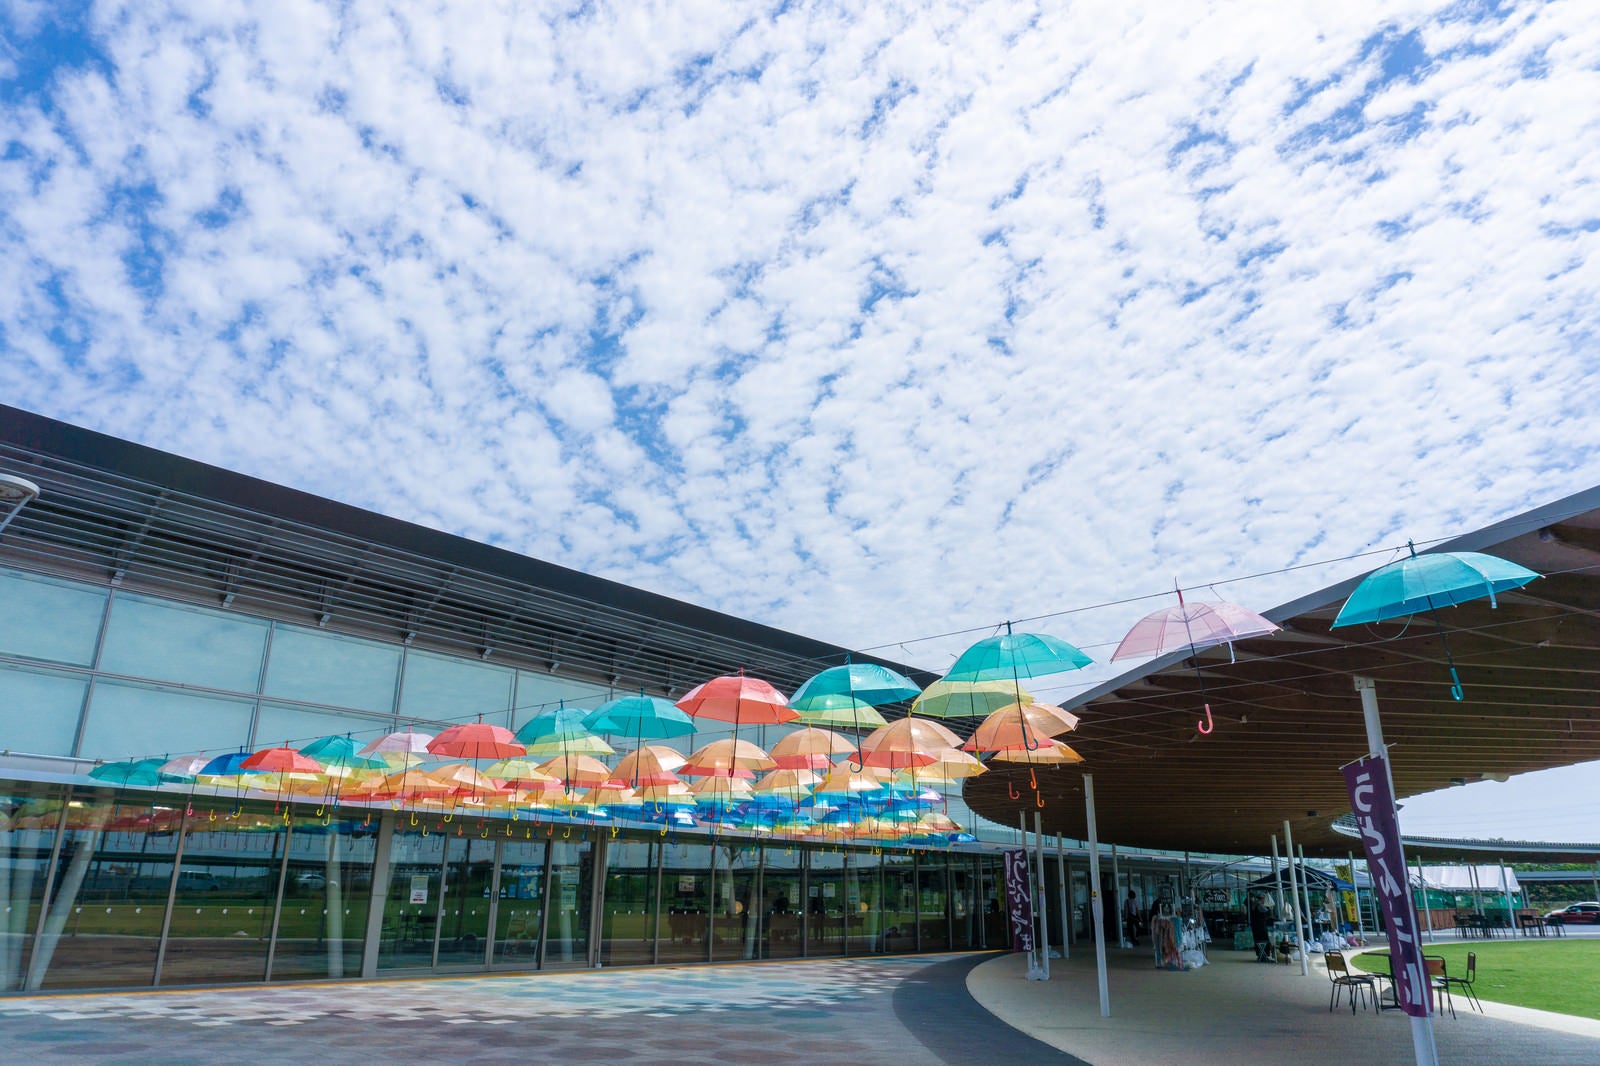 「カラフルな傘の列とひつじ雲の空」の写真